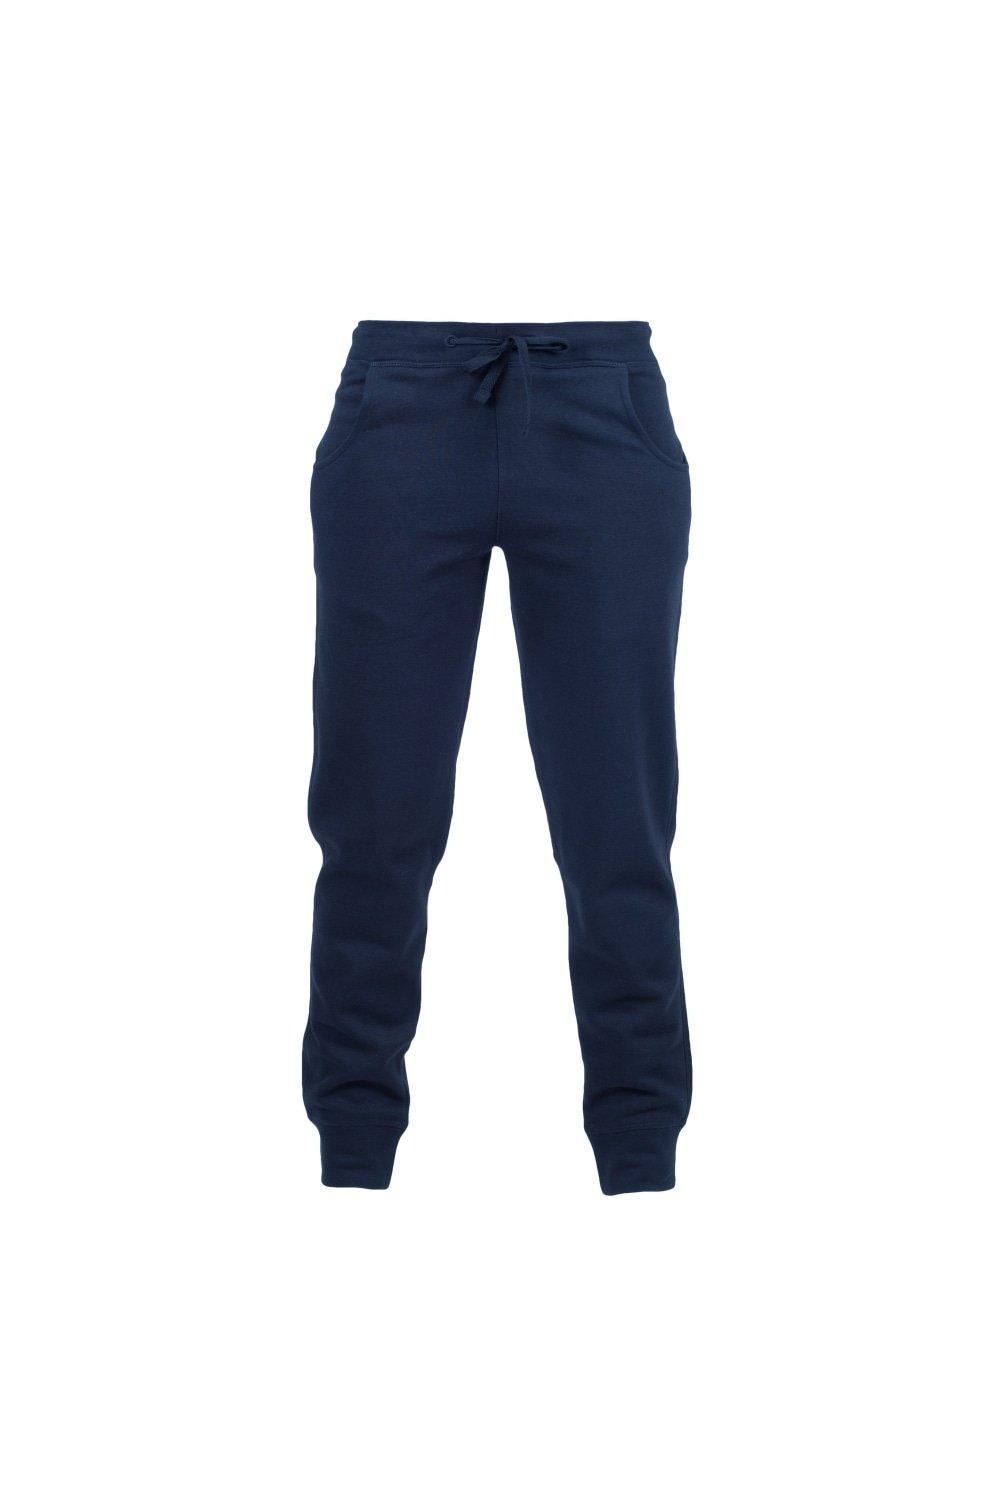 цена Узкие спортивные брюки Skinni Minni с манжетами (2 шт. в упаковке) Skinni Fit, темно-синий